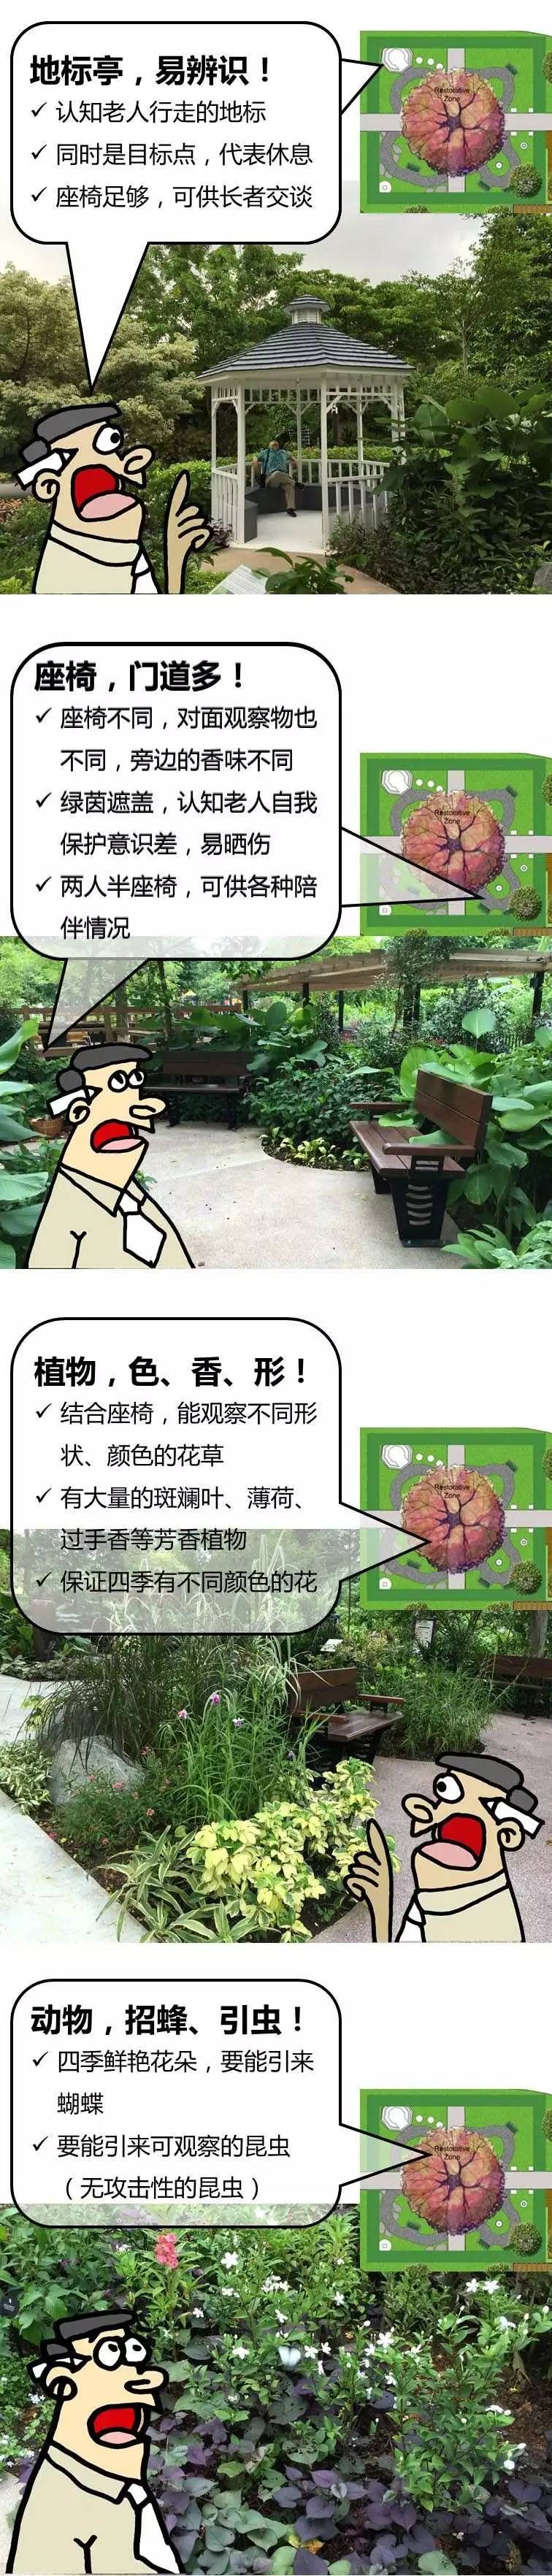 新加坡建了个能治疗老年痴呆的花园